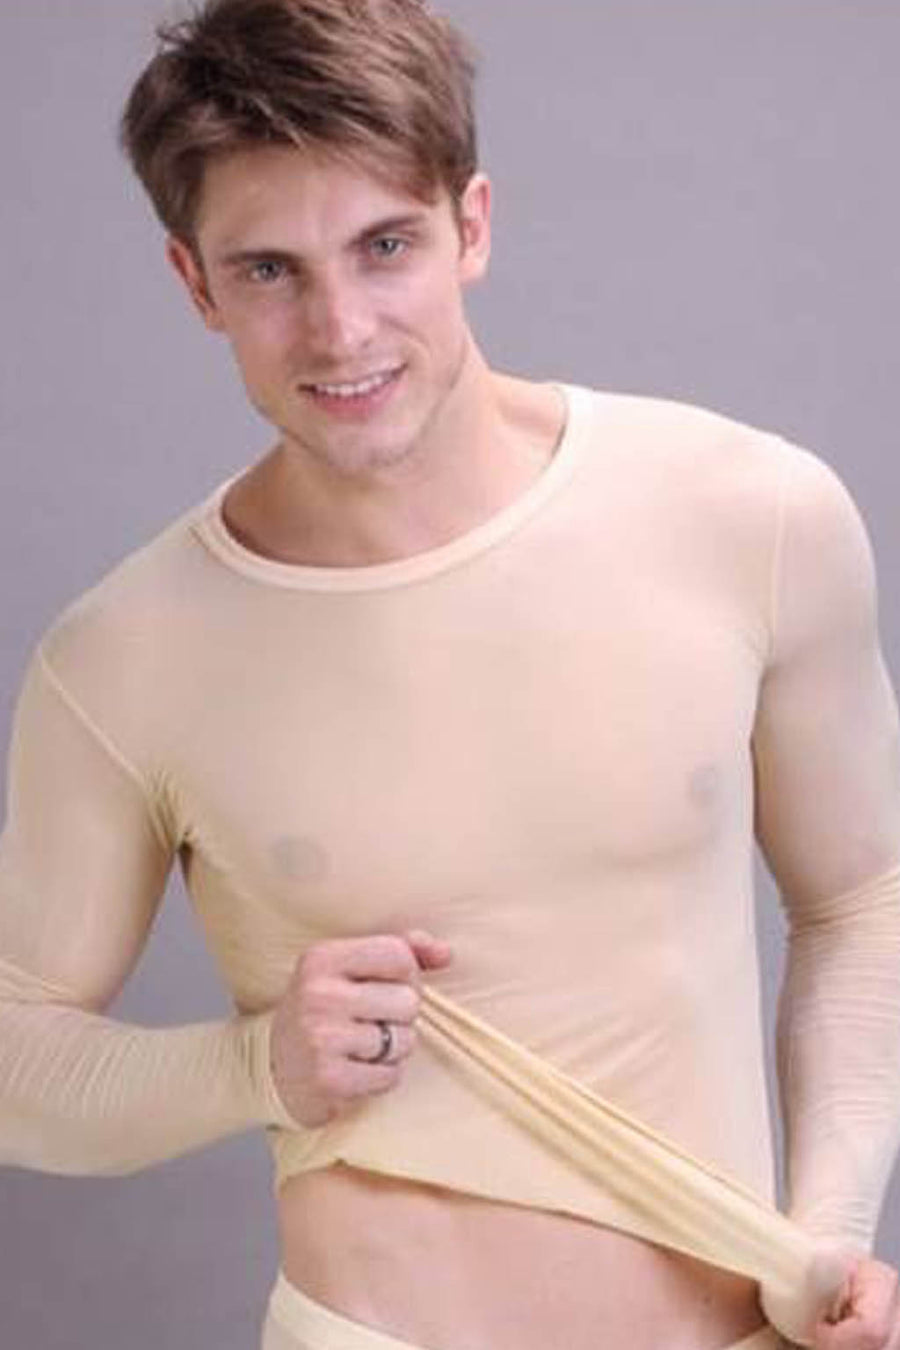 Manview Mens Sheer Long Sleeve Top Thermal Underwear